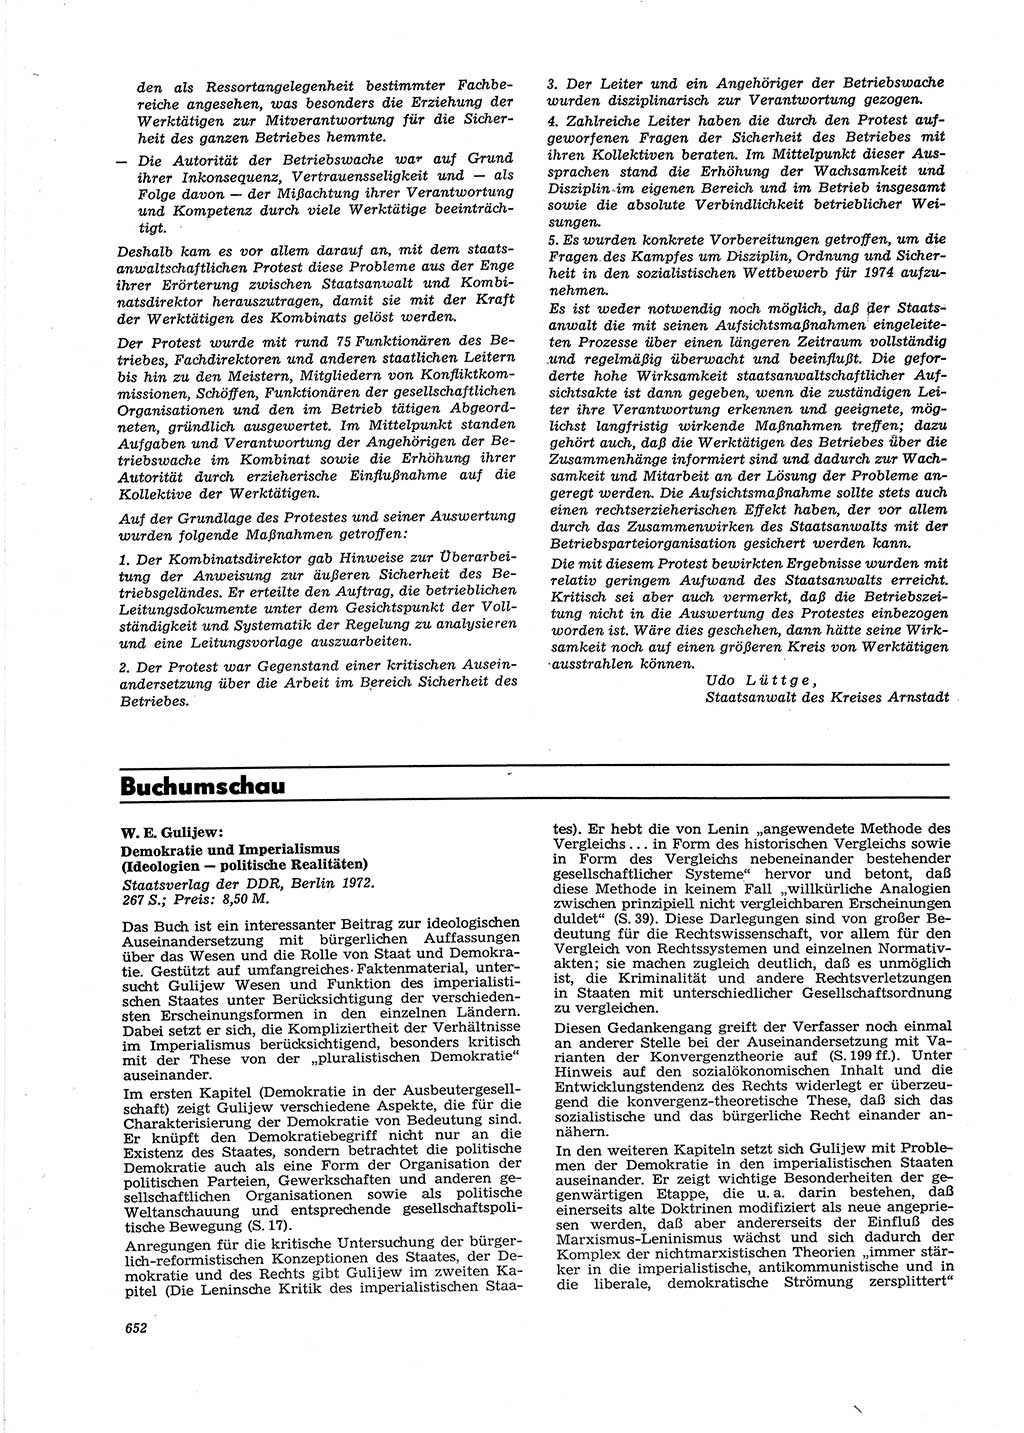 Neue Justiz (NJ), Zeitschrift für Recht und Rechtswissenschaft [Deutsche Demokratische Republik (DDR)], 27. Jahrgang 1973, Seite 652 (NJ DDR 1973, S. 652)